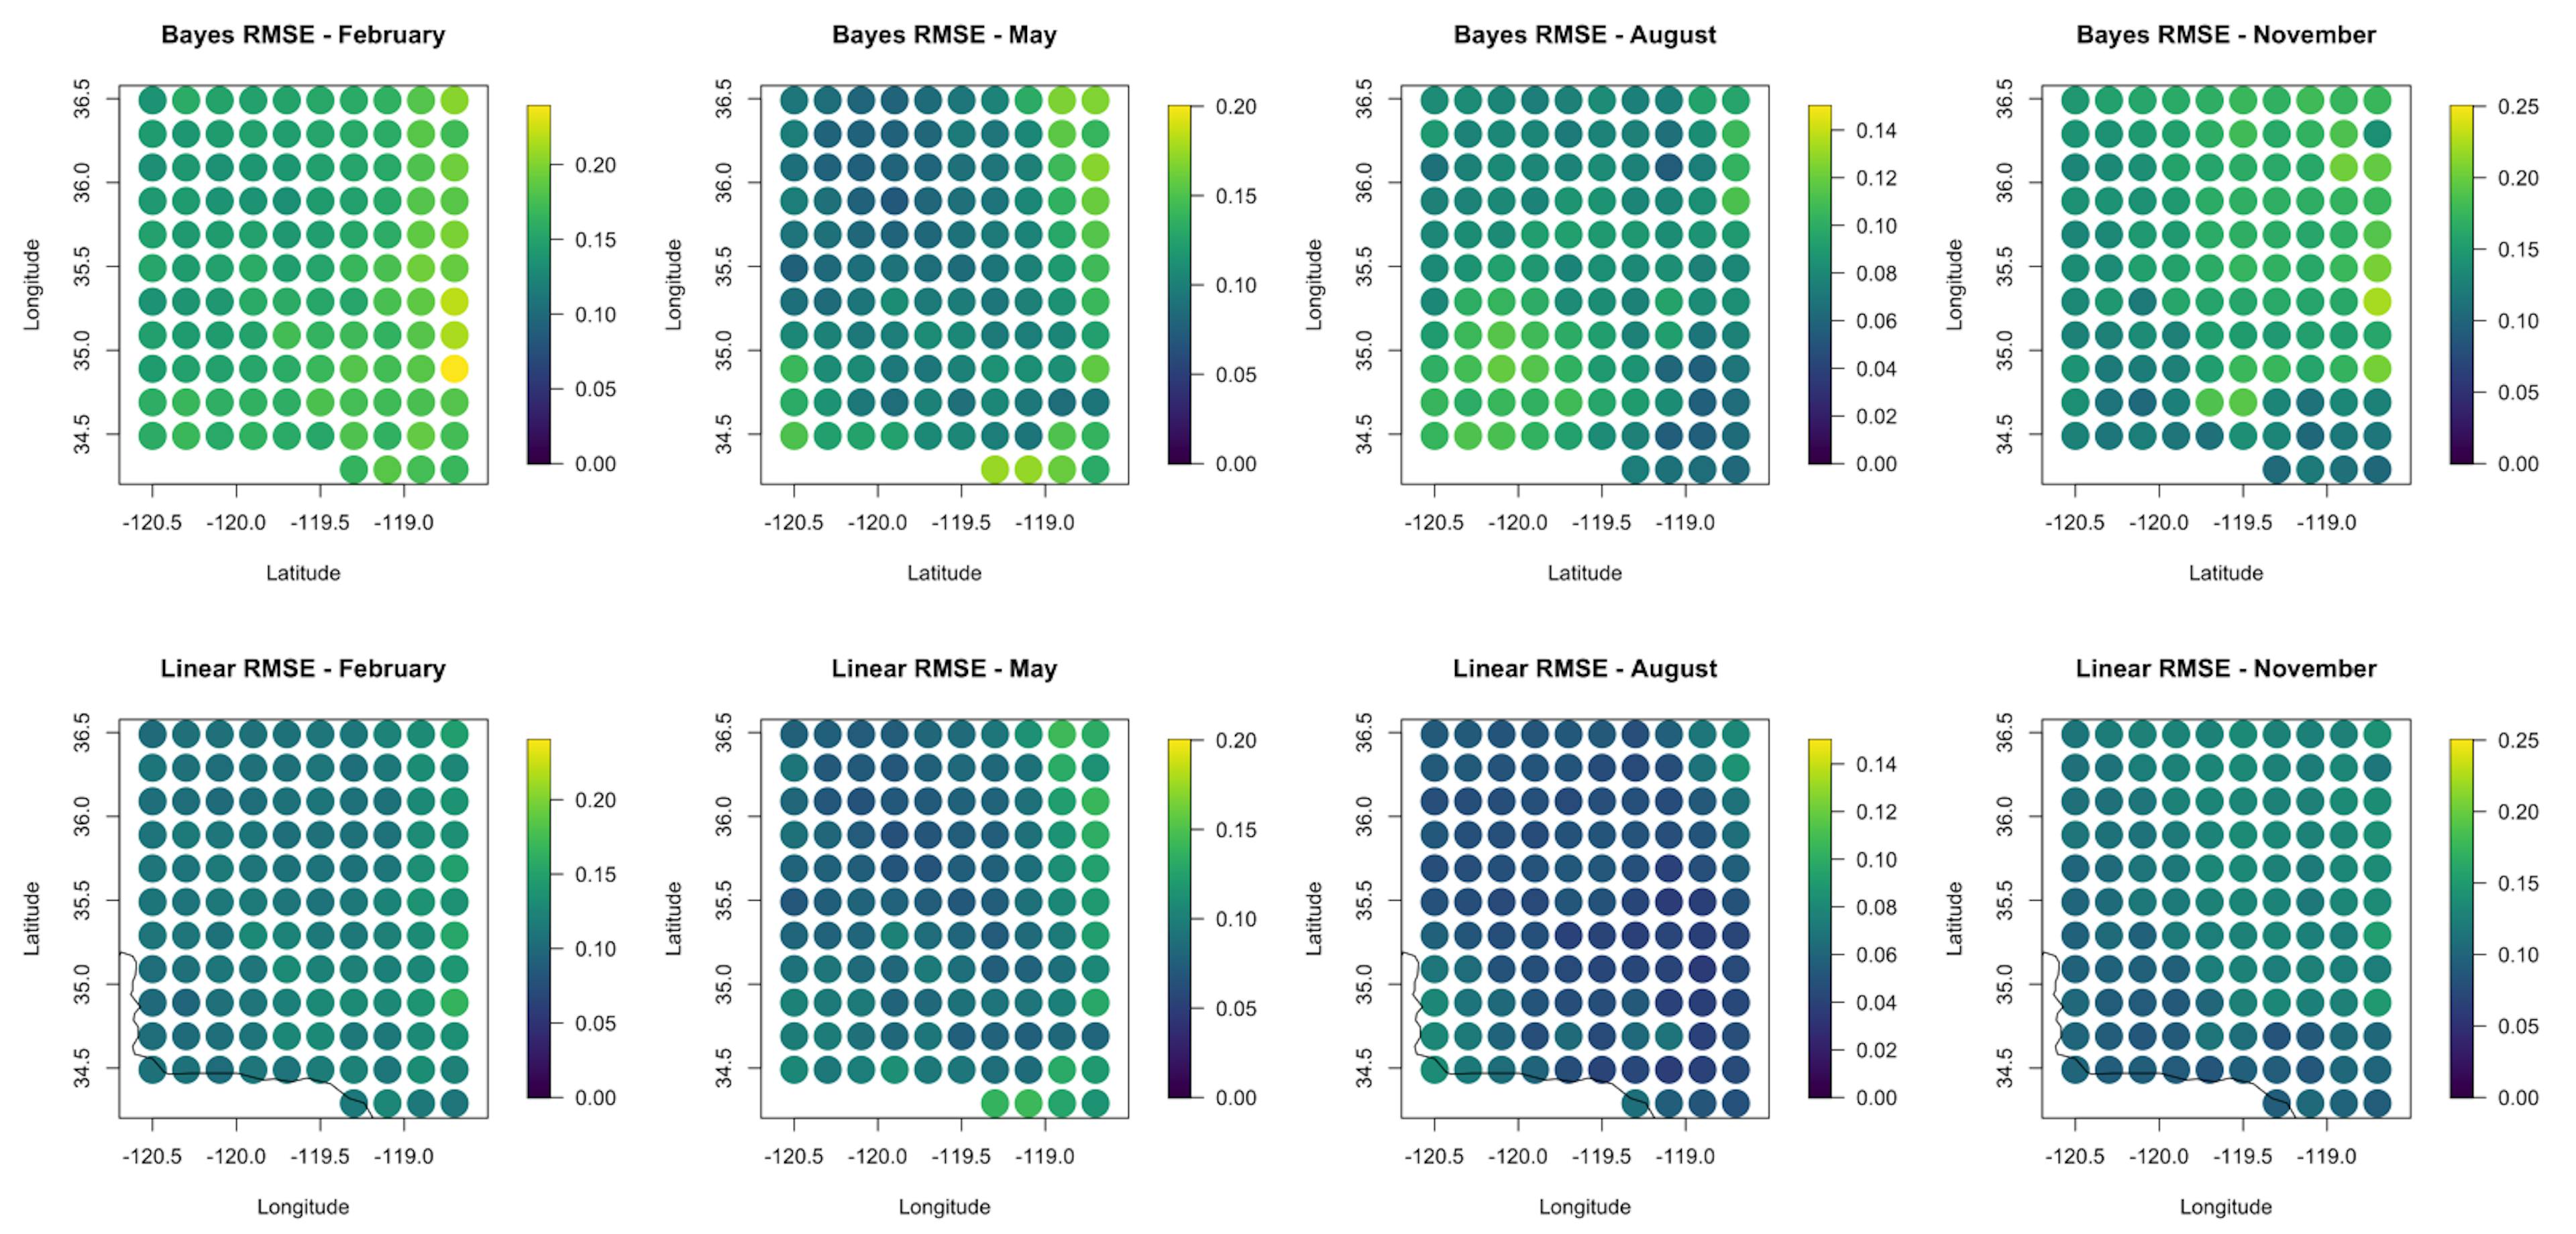 Hình 5. So sánh các giá trị RMSE cho dự đoán ngoài mẫu trong bốn tháng được xem xét. Kết quả của mô hình Bayes nằm ở hàng trên cùng và kết quả tính lại lưới đơn giản ở hàng dưới cùng. RMSE thường cao hơn đối với kết quả Bayesian và trong tháng 11 đối với cả hai mô hình.